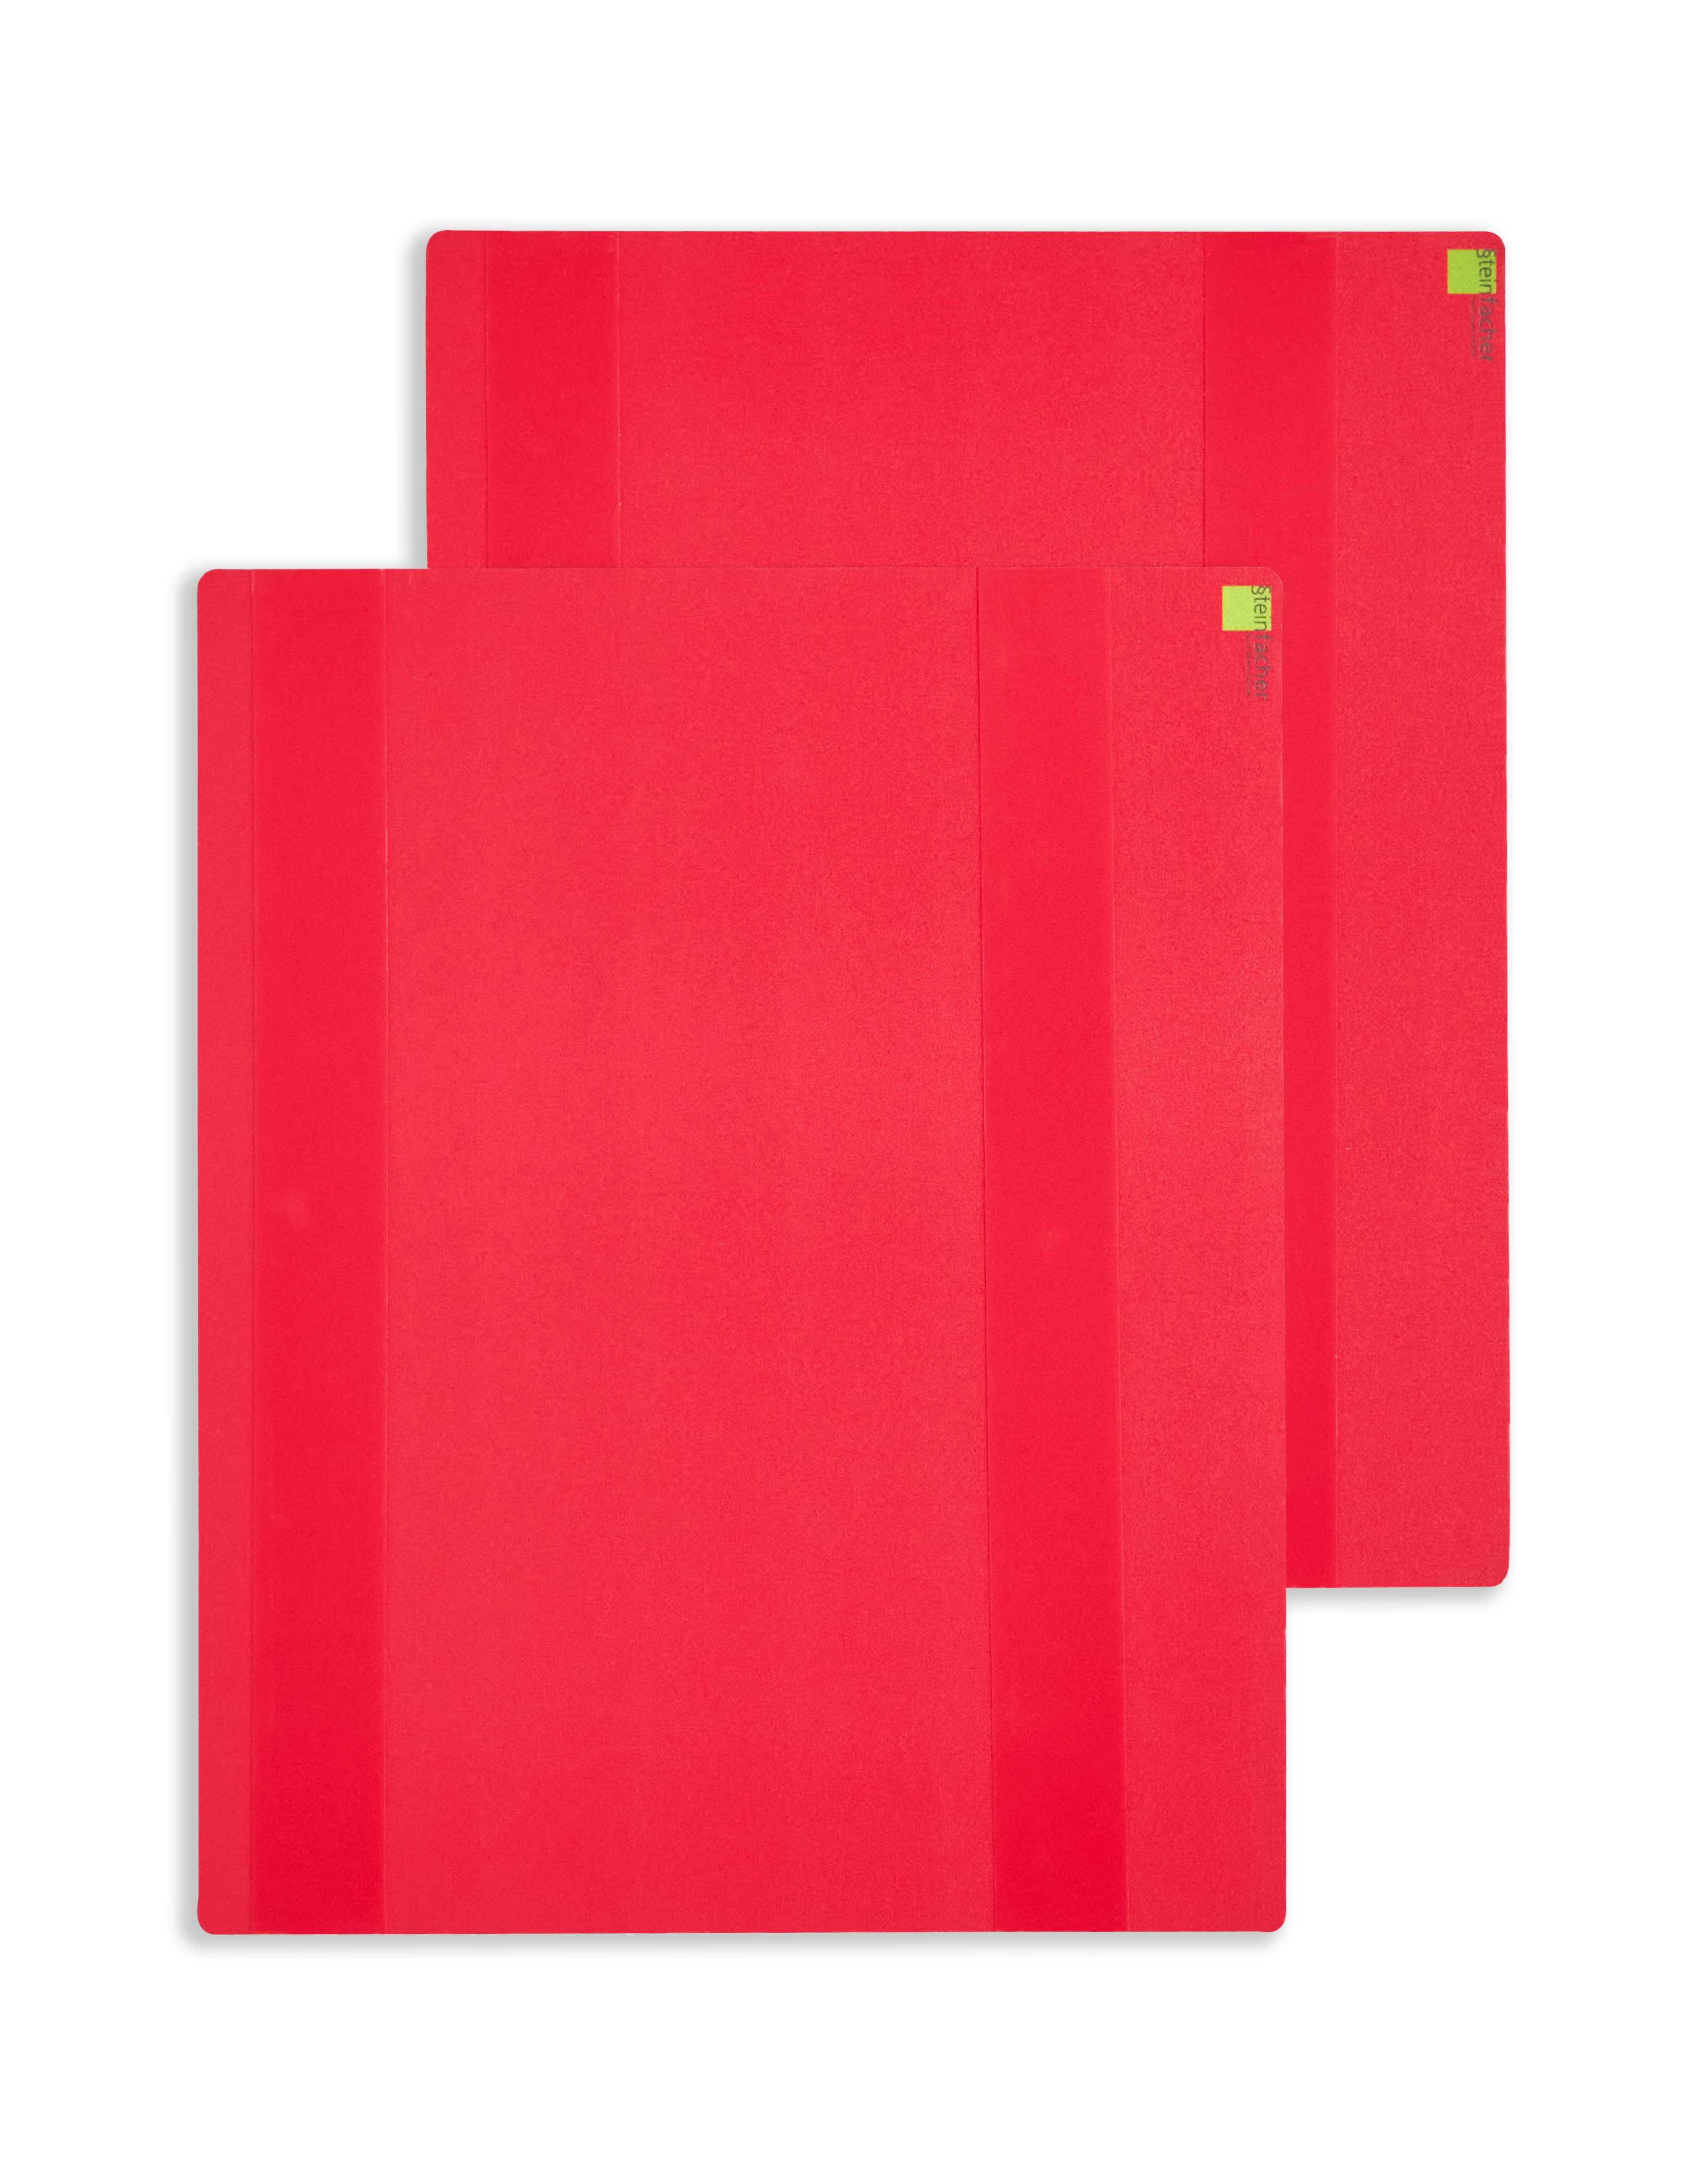 Griffregister-Schutzdeckel Rot – für Vorder- und Rückseite